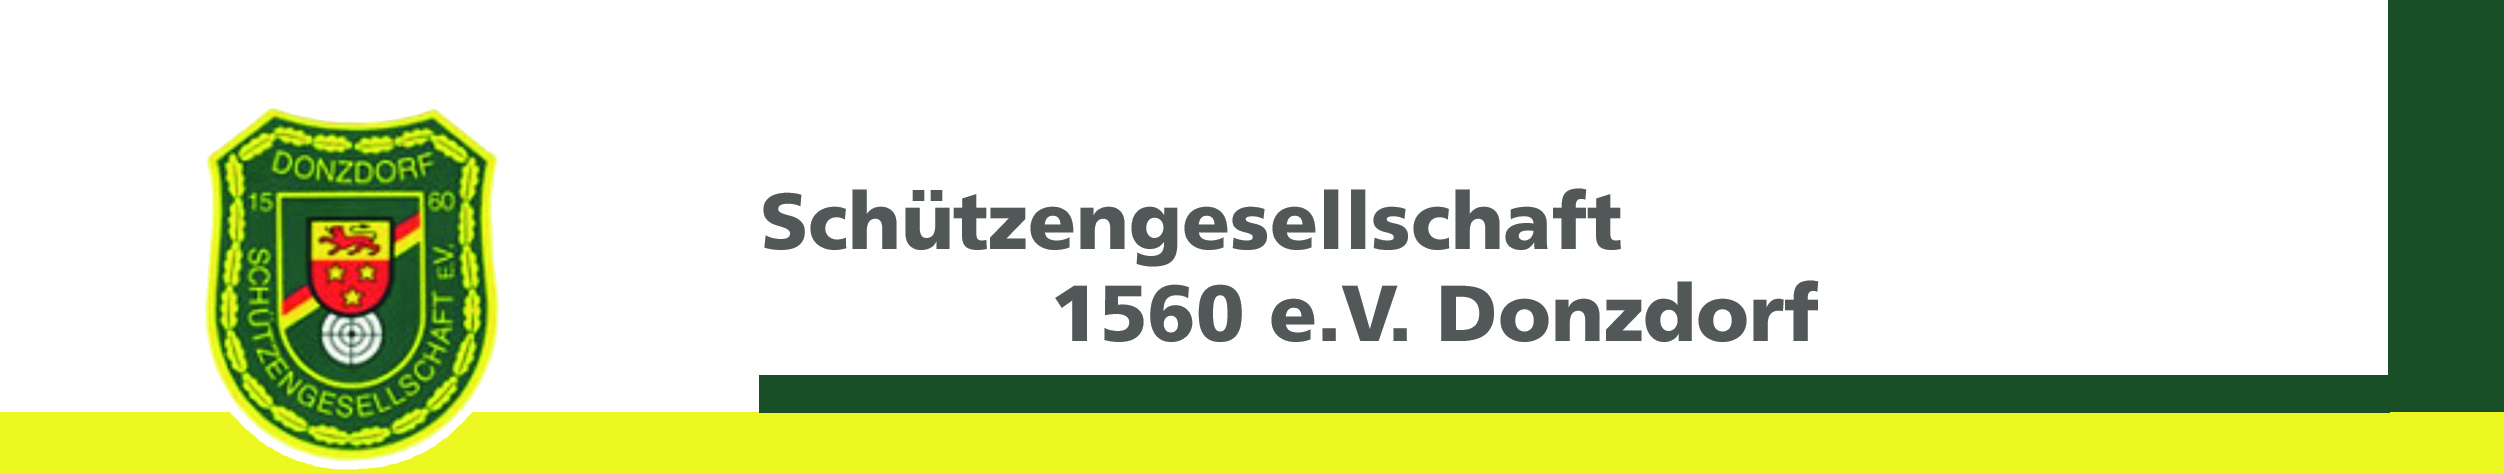 Schützengesellschaft 1560 e.V. Donzdorf